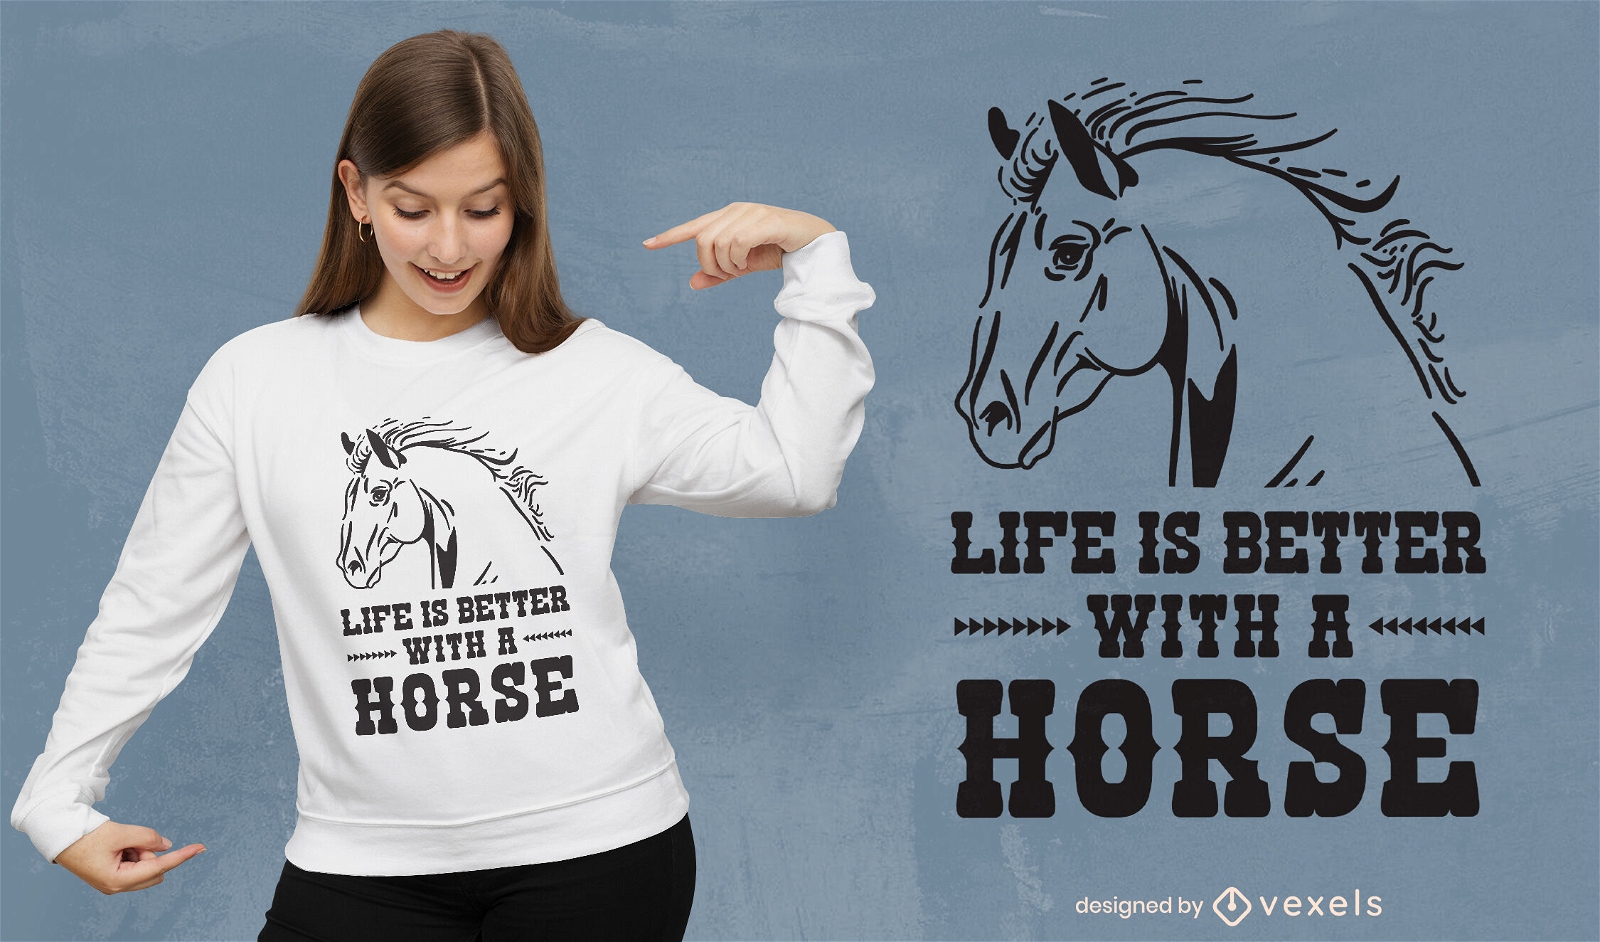 La vida es mejor dise?o de camiseta de cita de caballo.